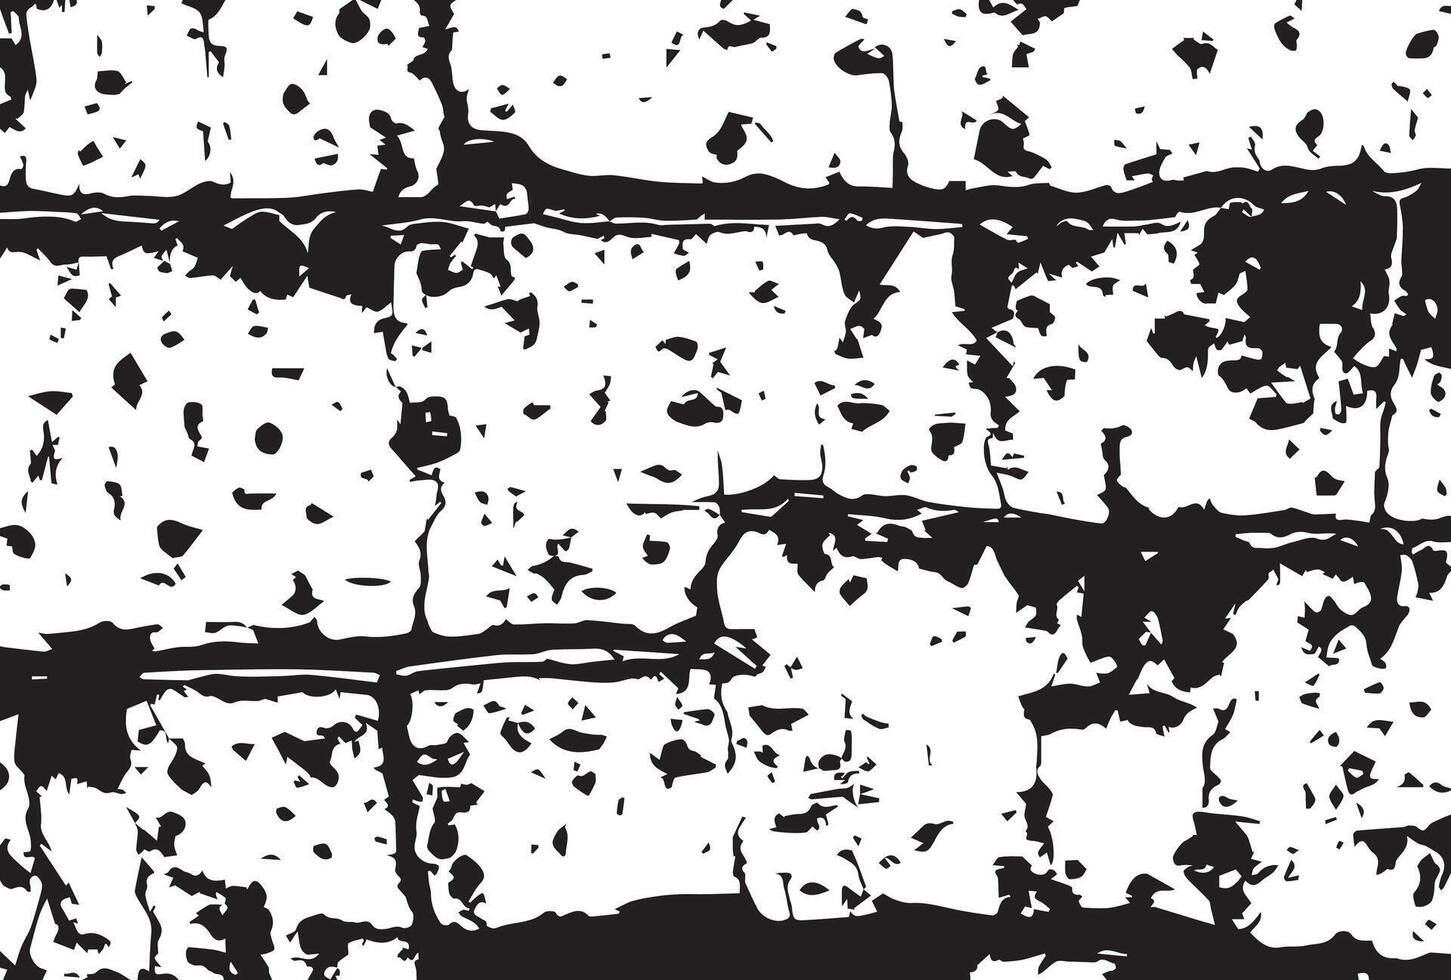 schwarz und Weiß Birke Rinde Grunge Textur Hintergrund. vektor